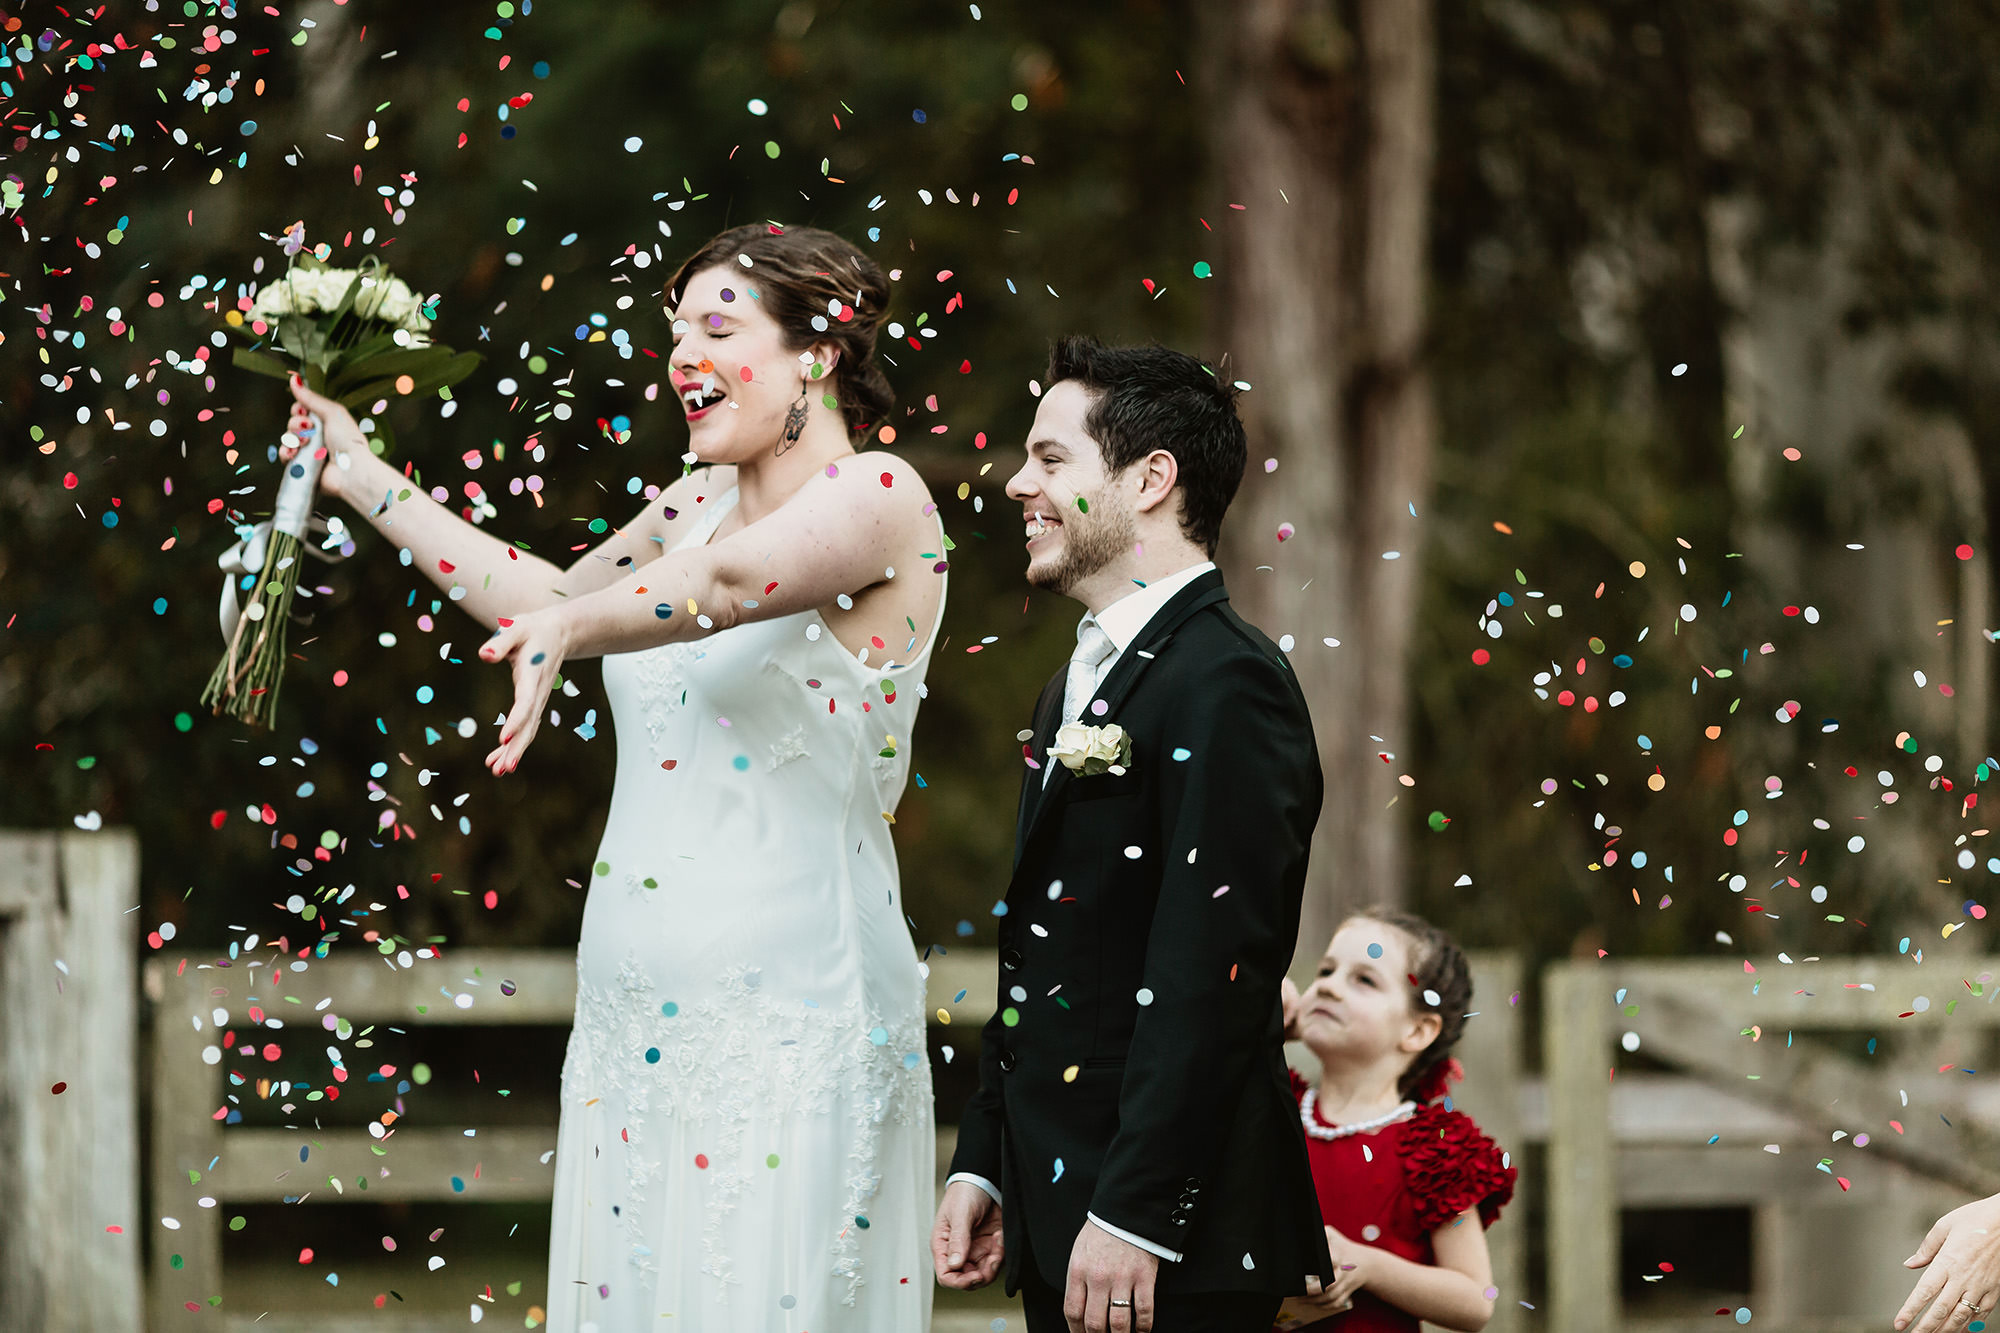 wedding confetti ideas & tips